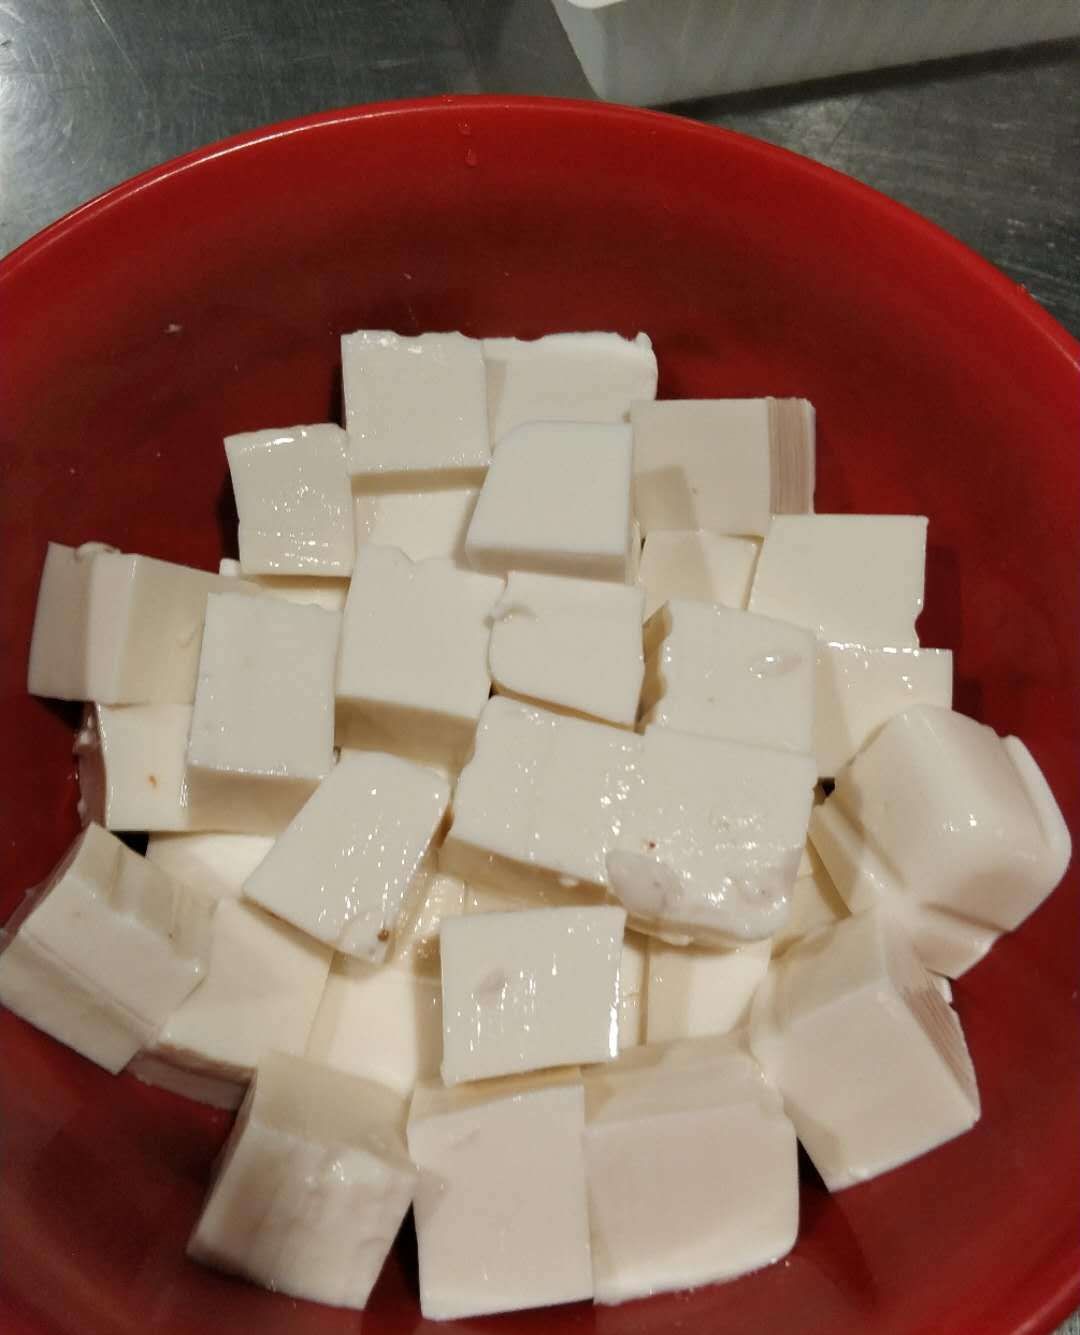 金沙内脂豆腐图片